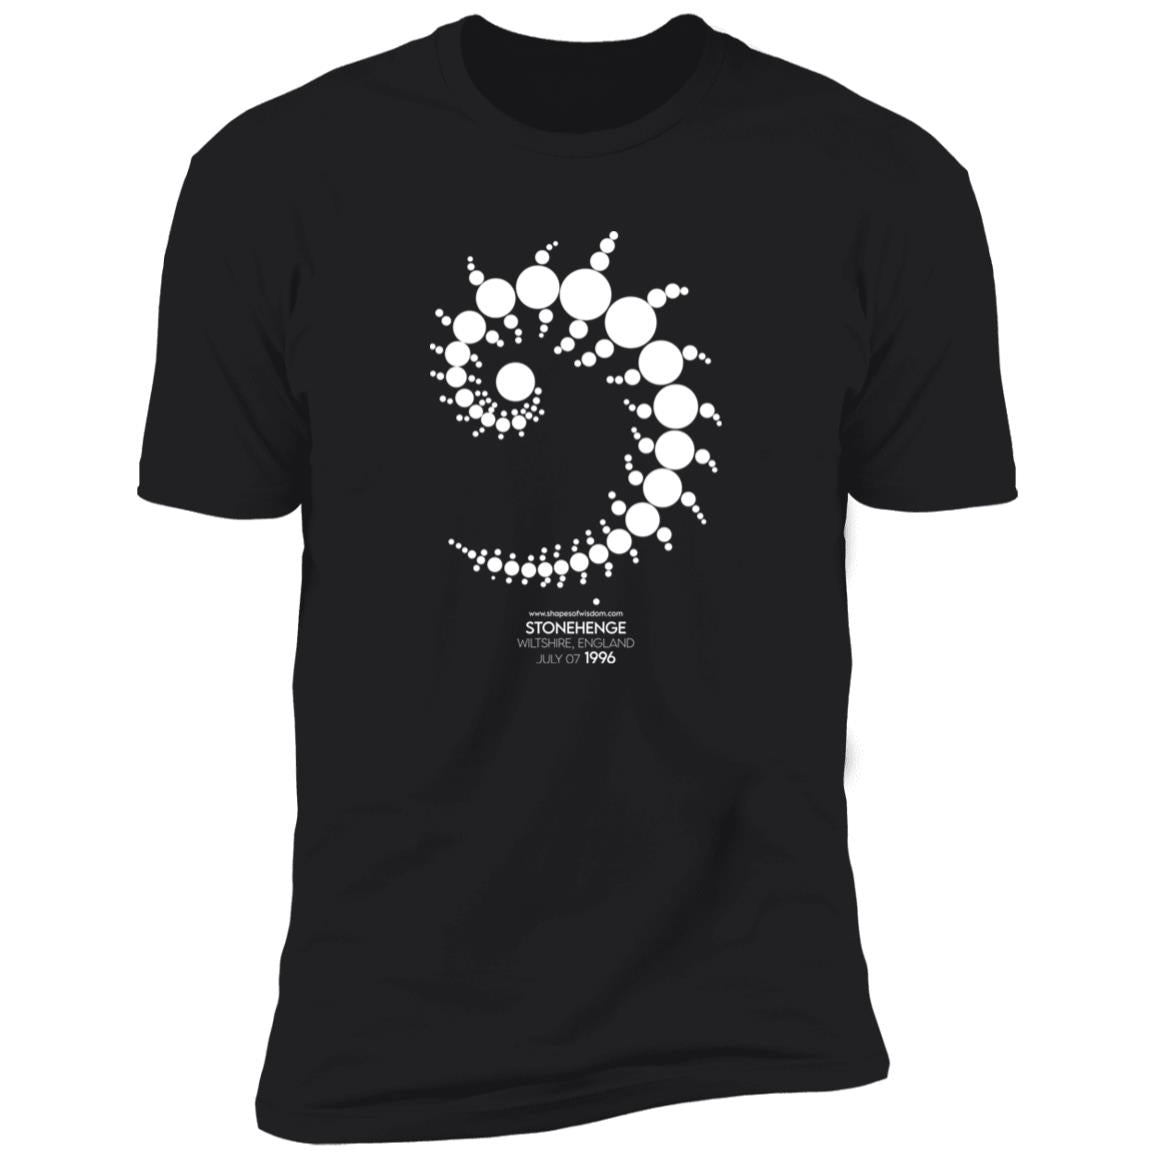 Crop Circle Premium T-Shirt - Stonehenge 3